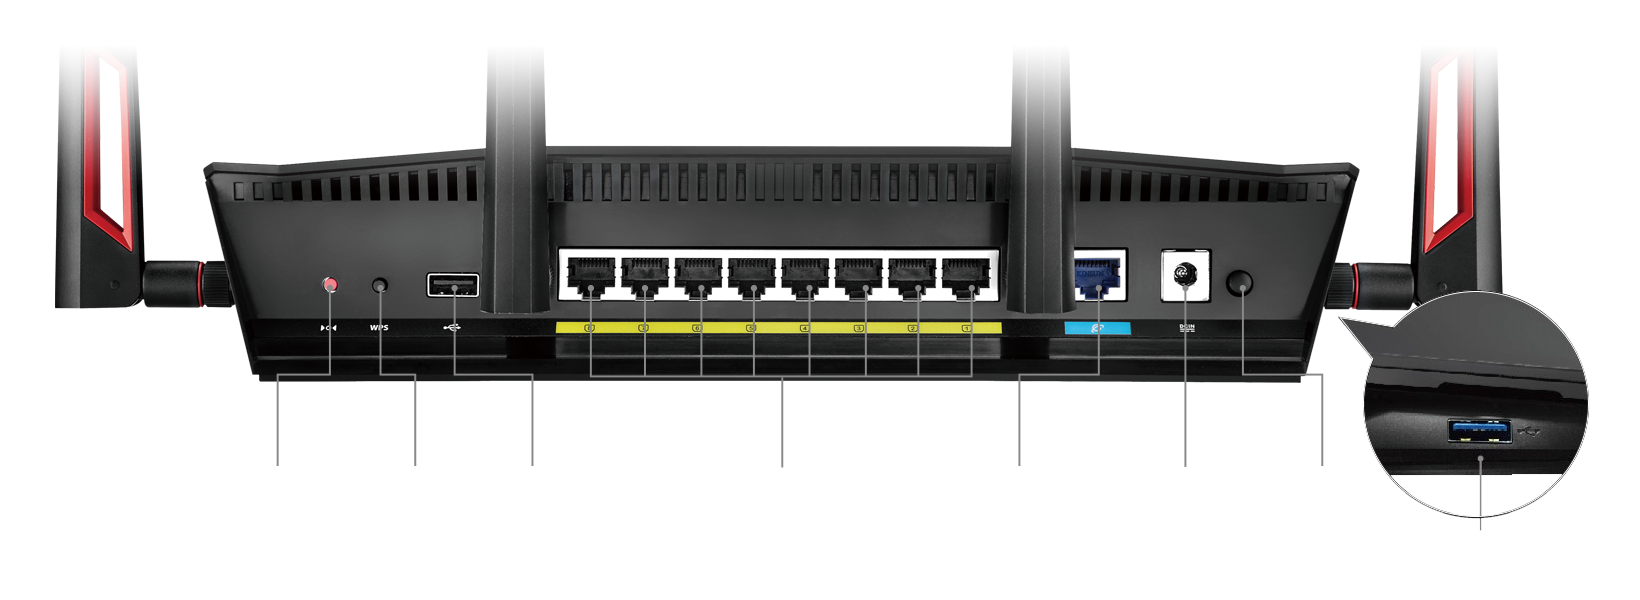 8 ports Gigabit LAN – 2x plus que ce que la plupart des routeurs offrent – le RT-AC88U est LE hub de votre maison connectée